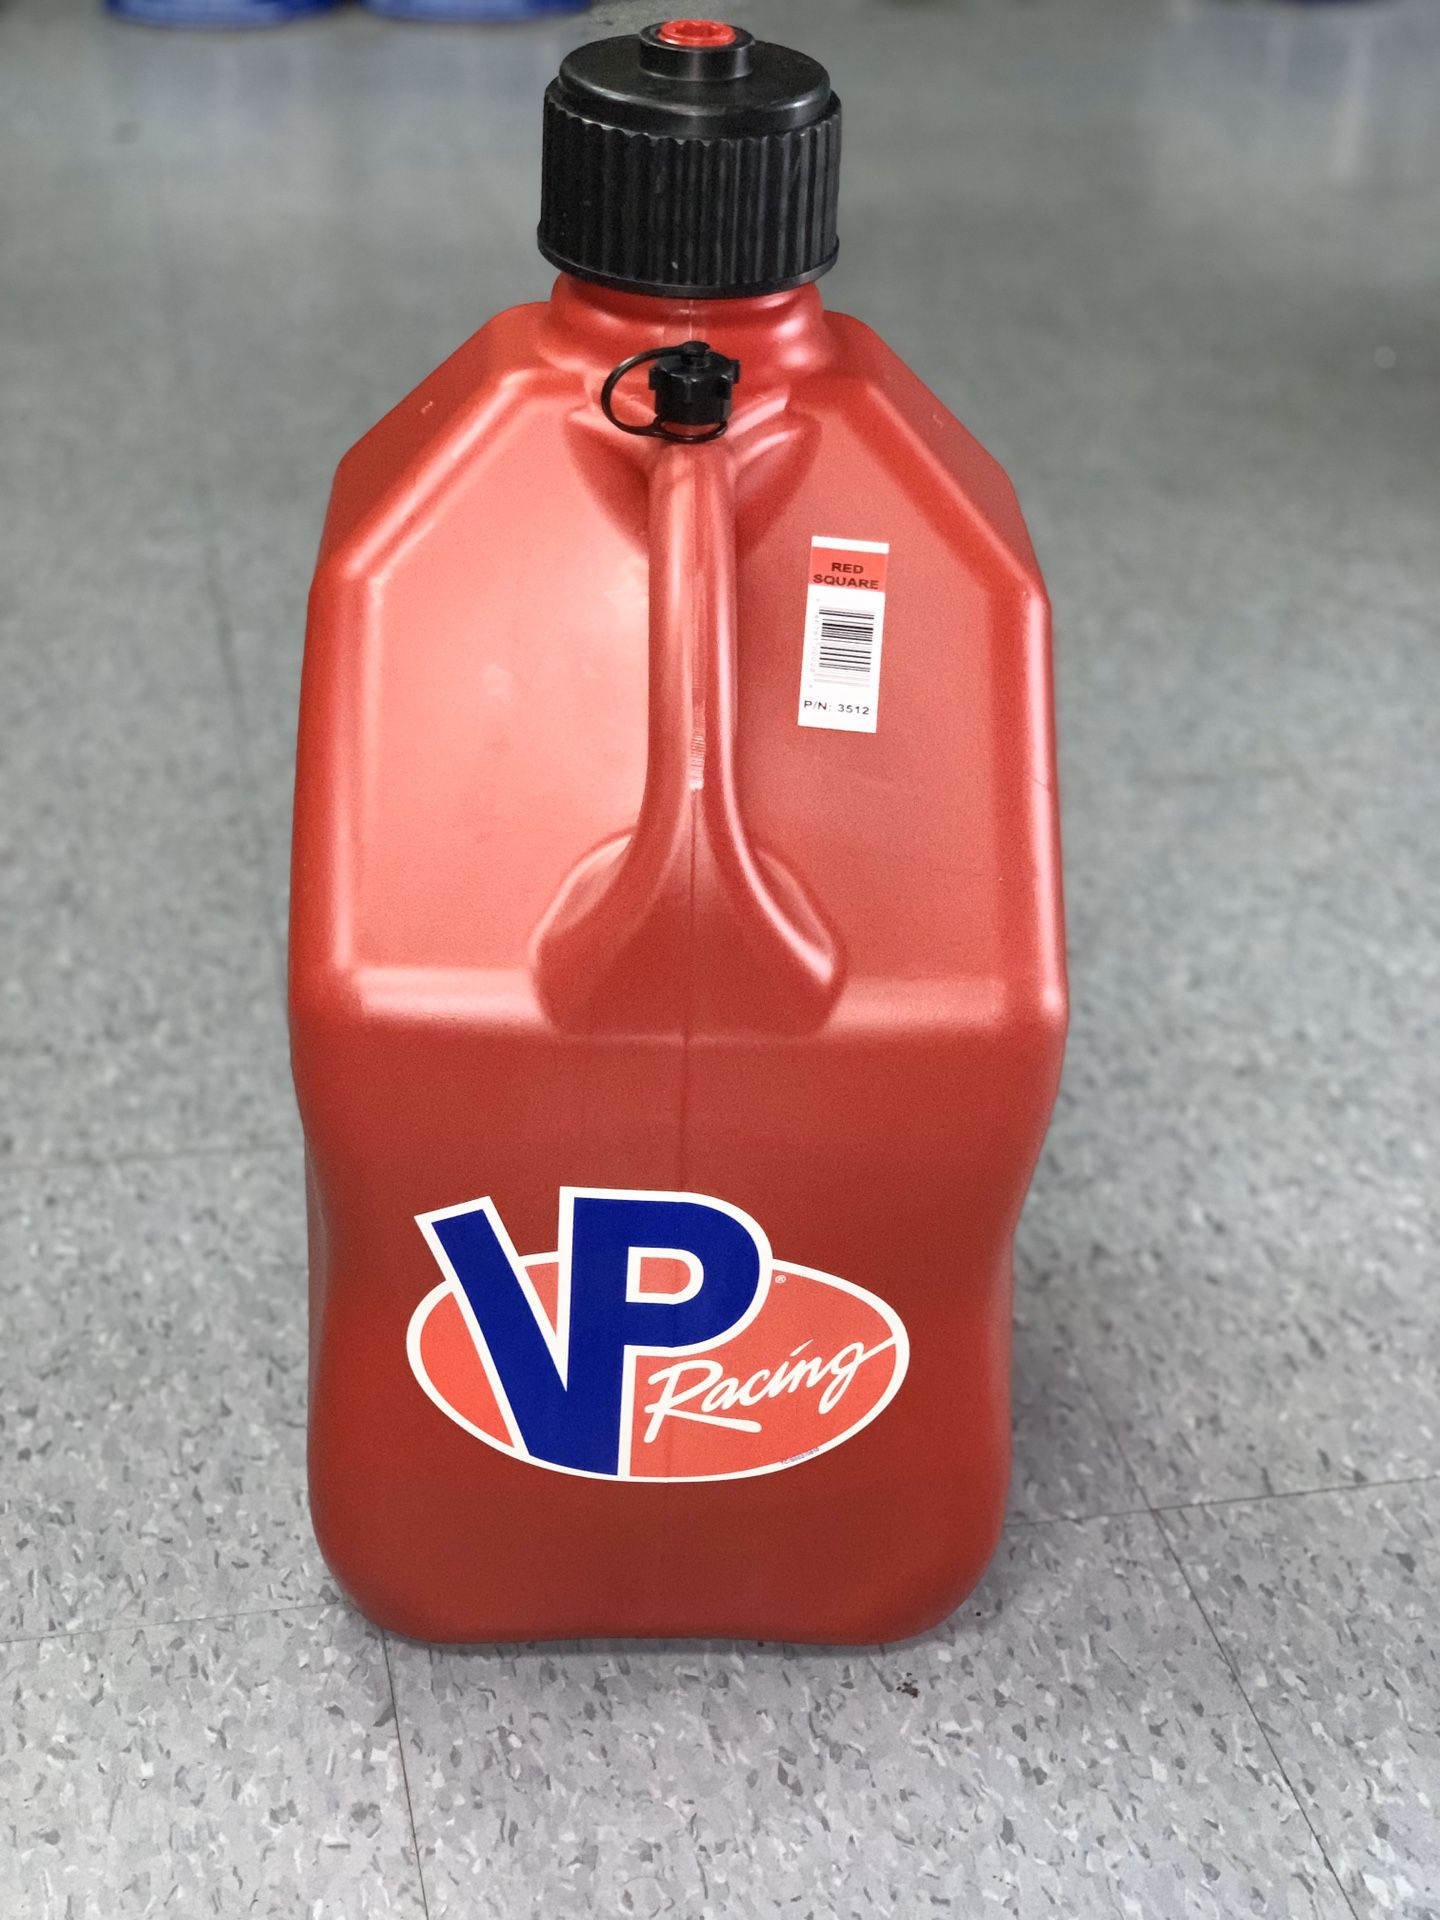 Vp racing gas jug 5gal